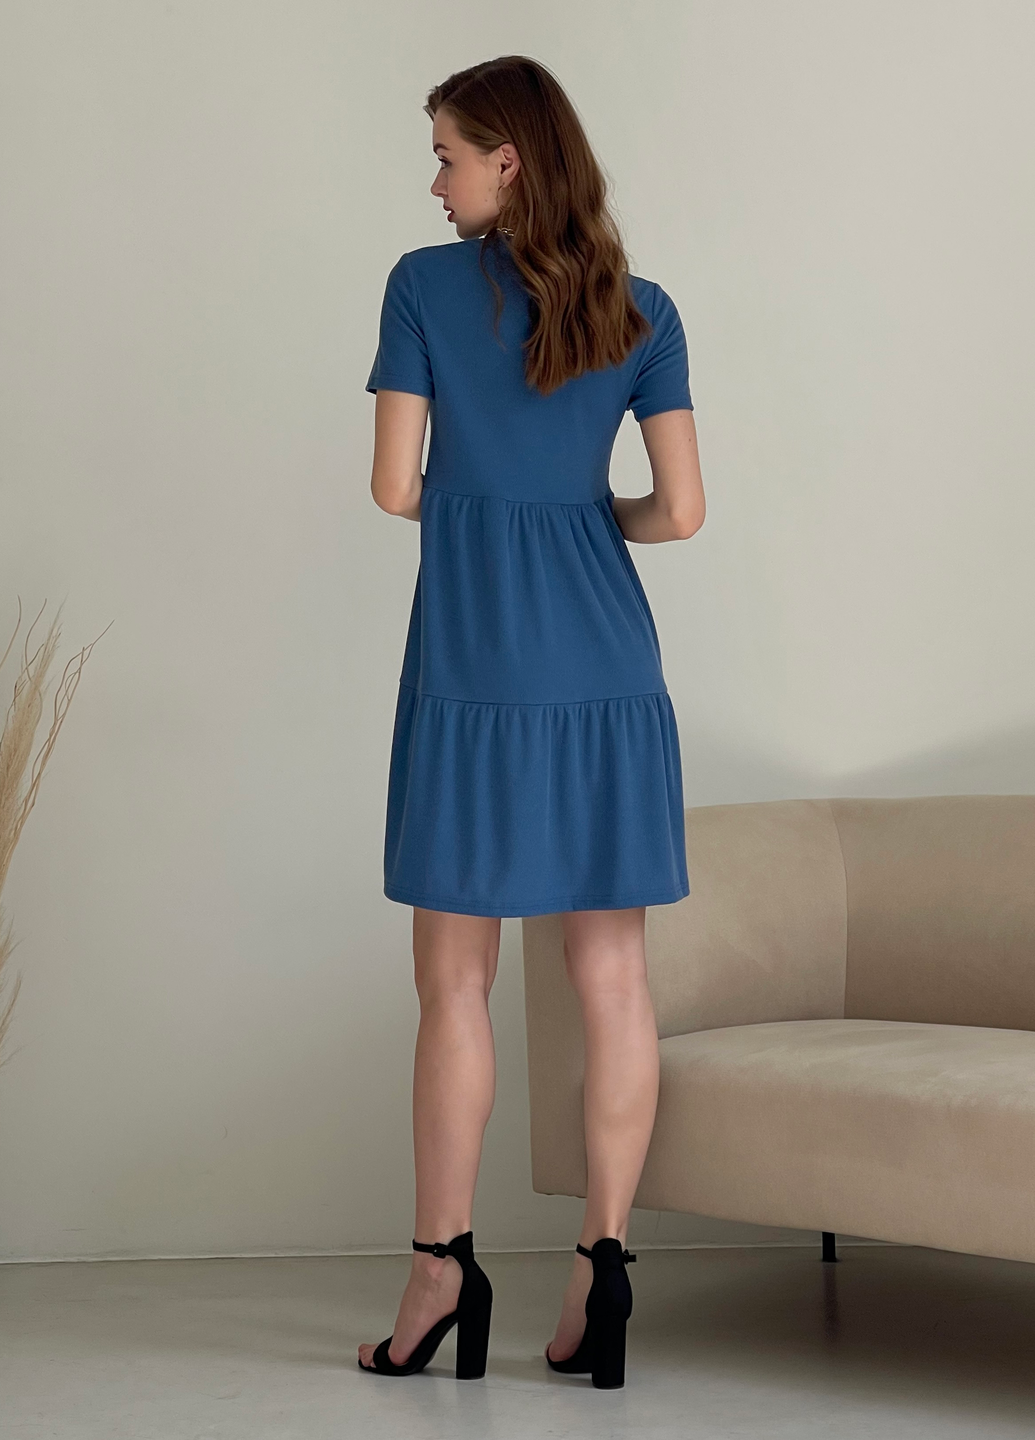 Купить Свободное платье трапеция миди синее Merlini Маркони 700001231 размер 42-44 (S-M) в интернет-магазине